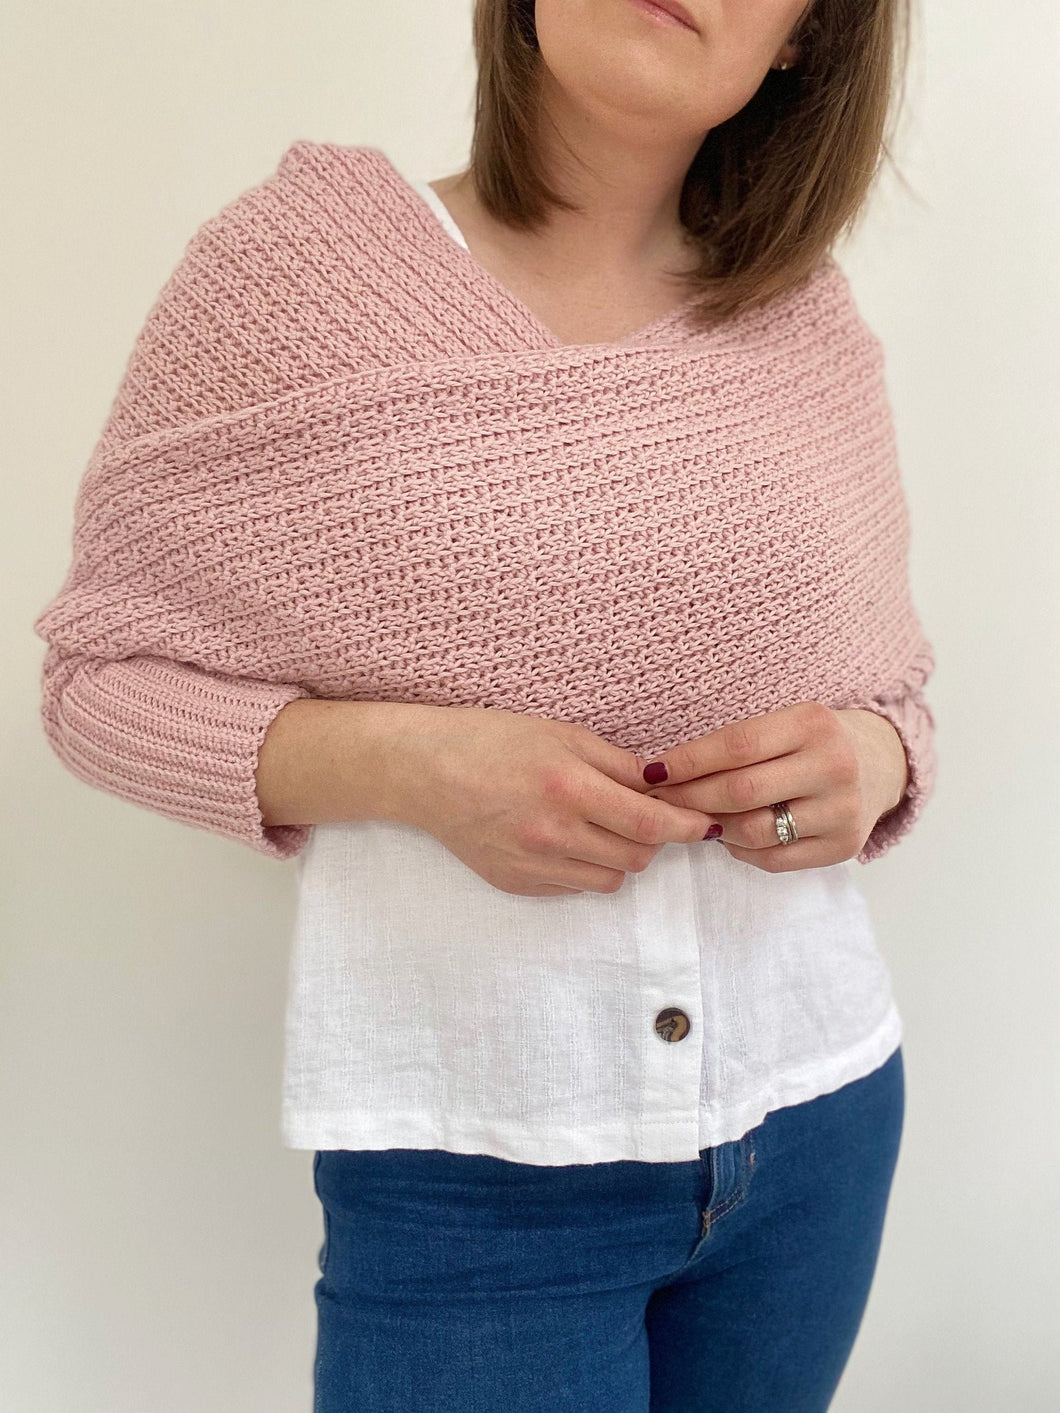 Eleanor Sweater Scarf Crochet PDF Pattern by Hannah Cross